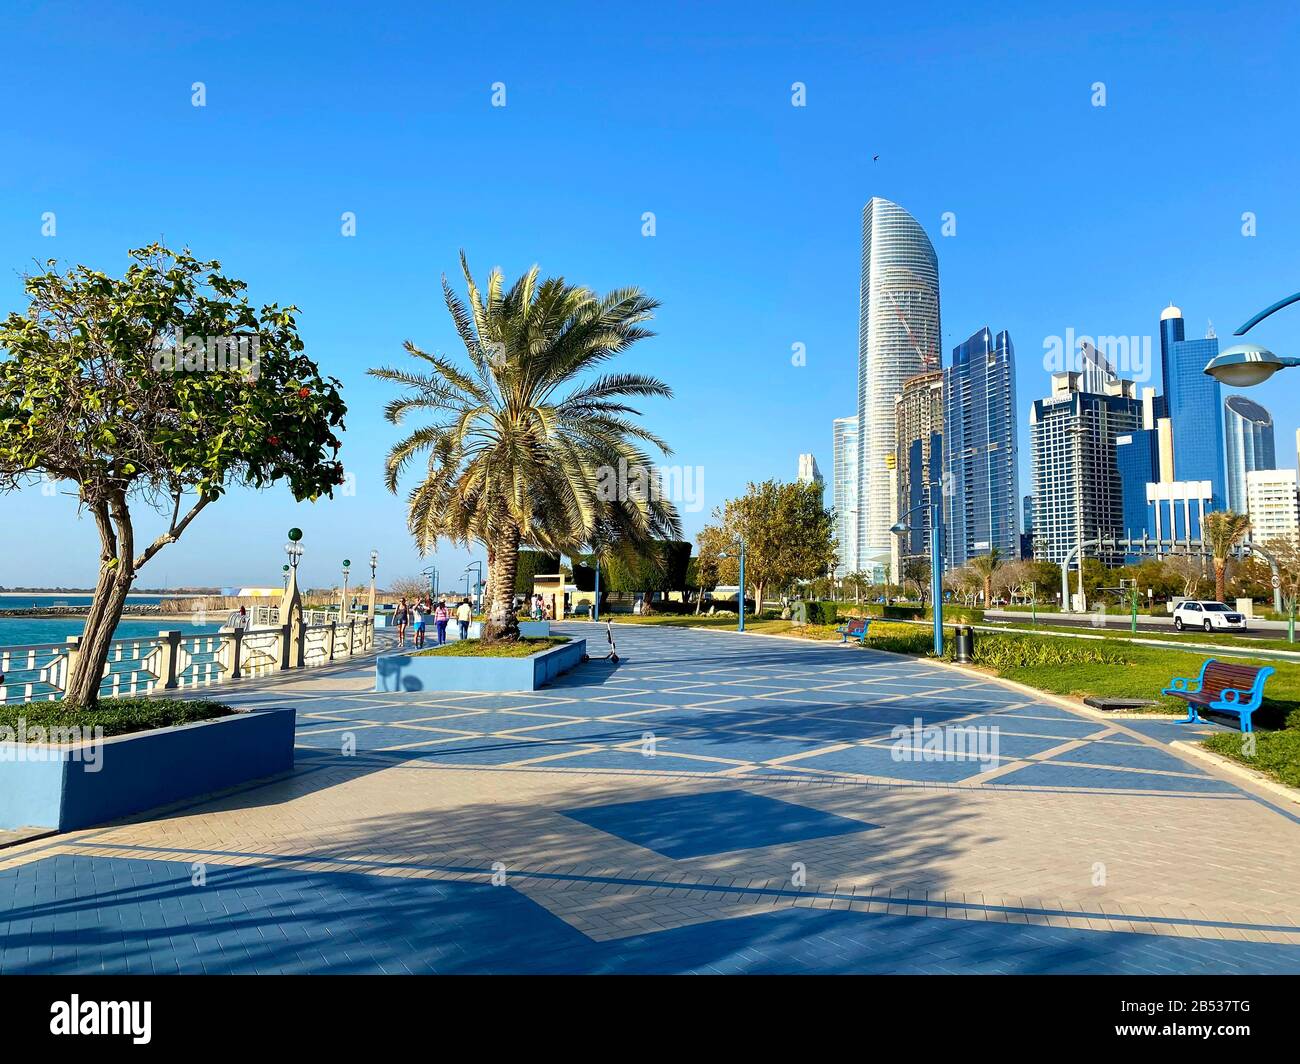 Abu Dhabi / Emirats Arabes Unis - 6 mars 2020: Célèbre promenade de la Corniche avec de nombreuses personnes. Belle longue rue Corniche avec gratte-ciel et plage à Abu Dhabi Banque D'Images